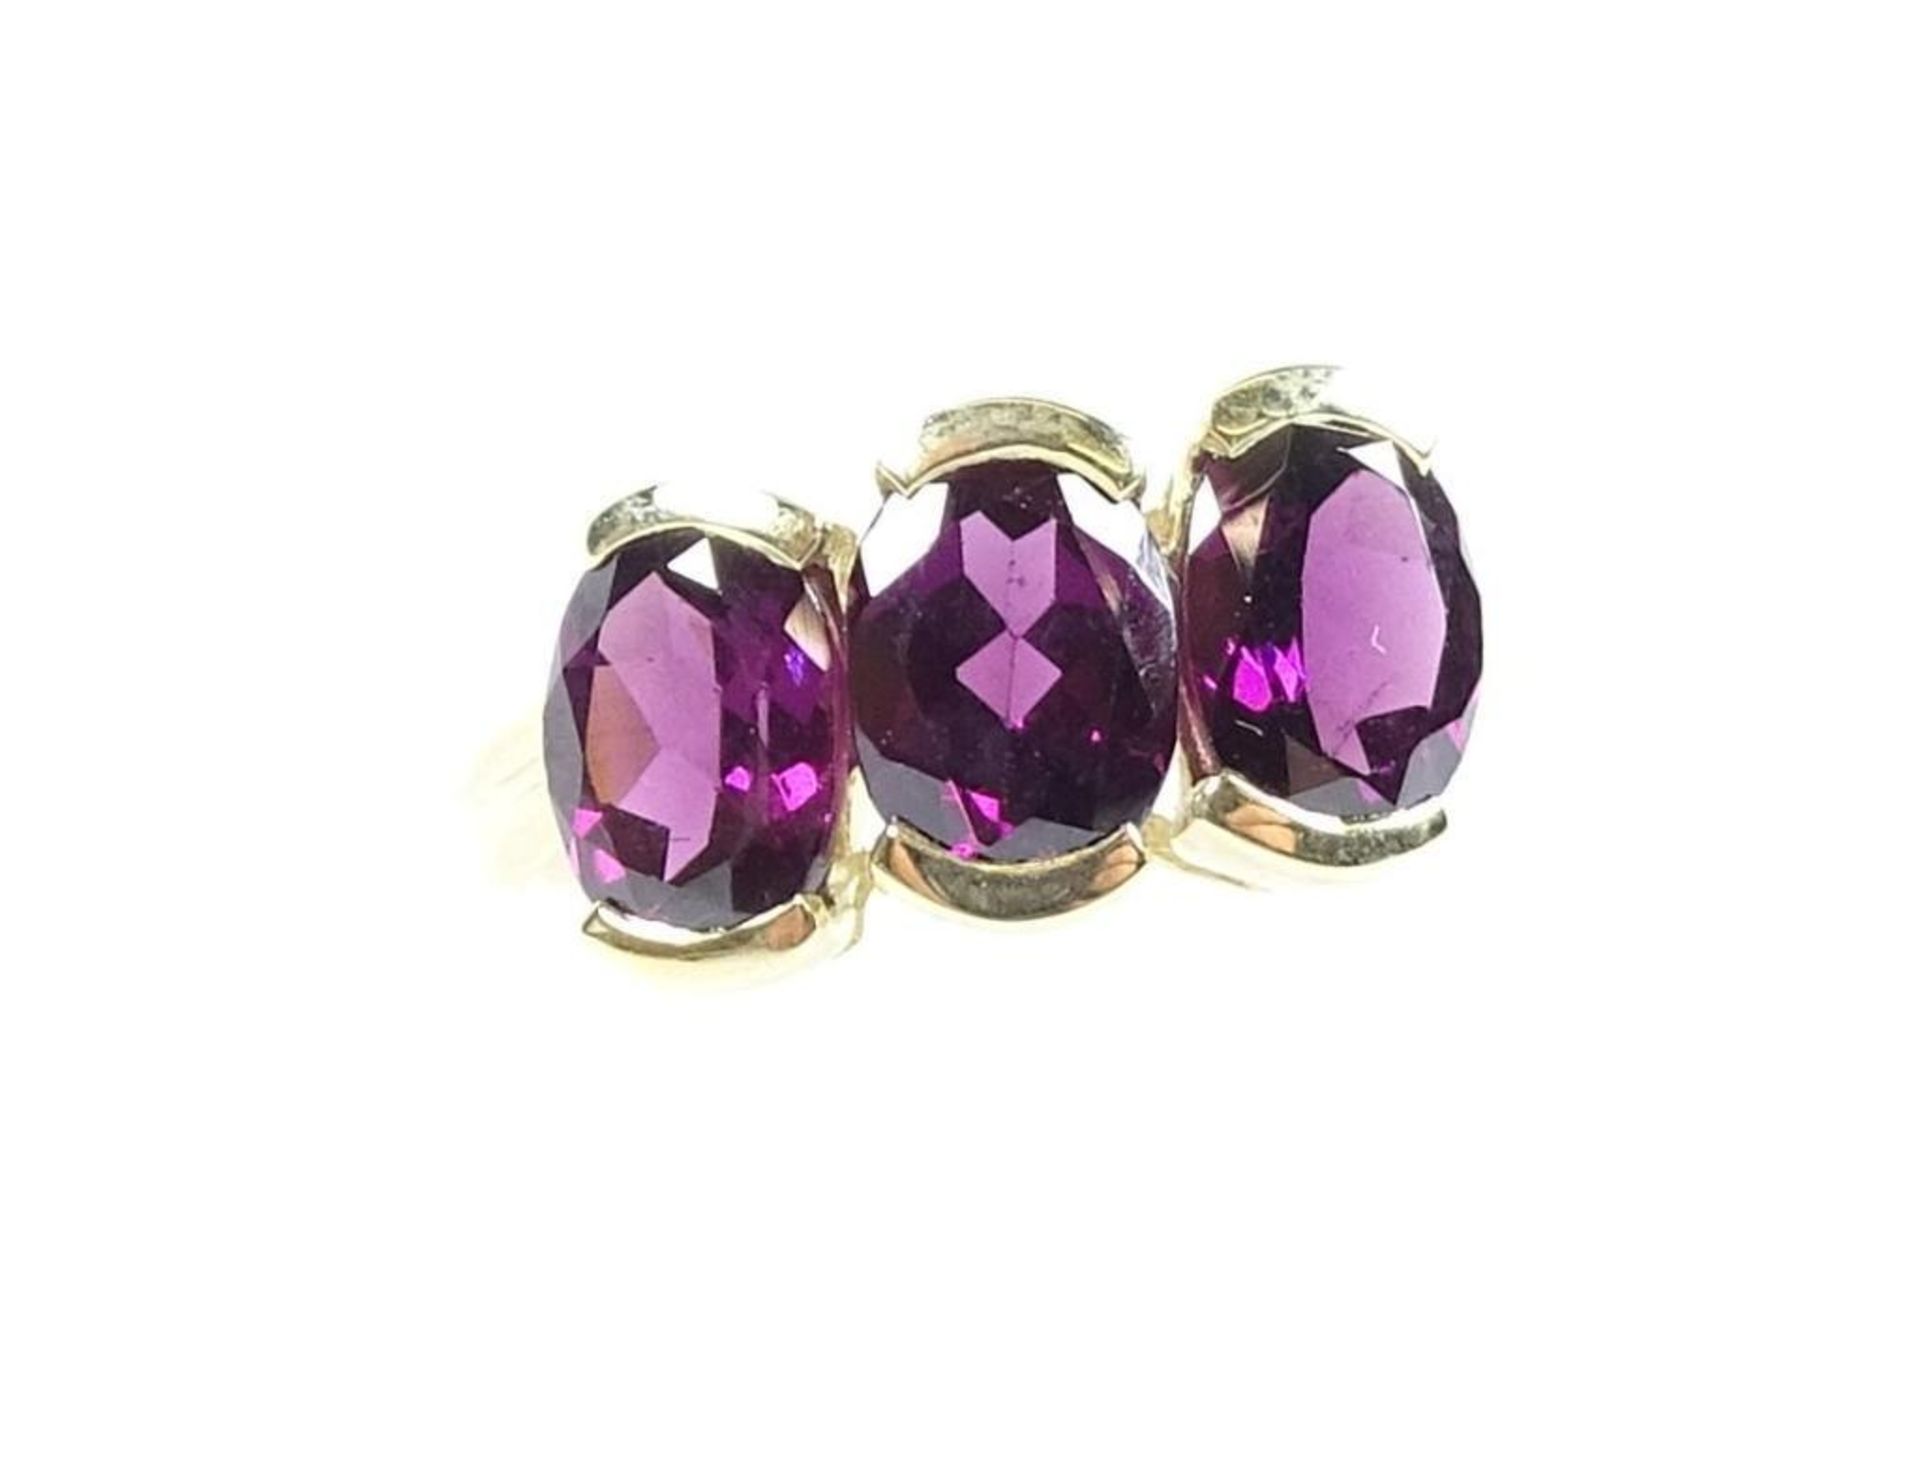 Goldring 375/000,violette Steine, RG 56/57, 4,1 Gramm,Juweliersauflösung-Ungetragene Ware / ohne